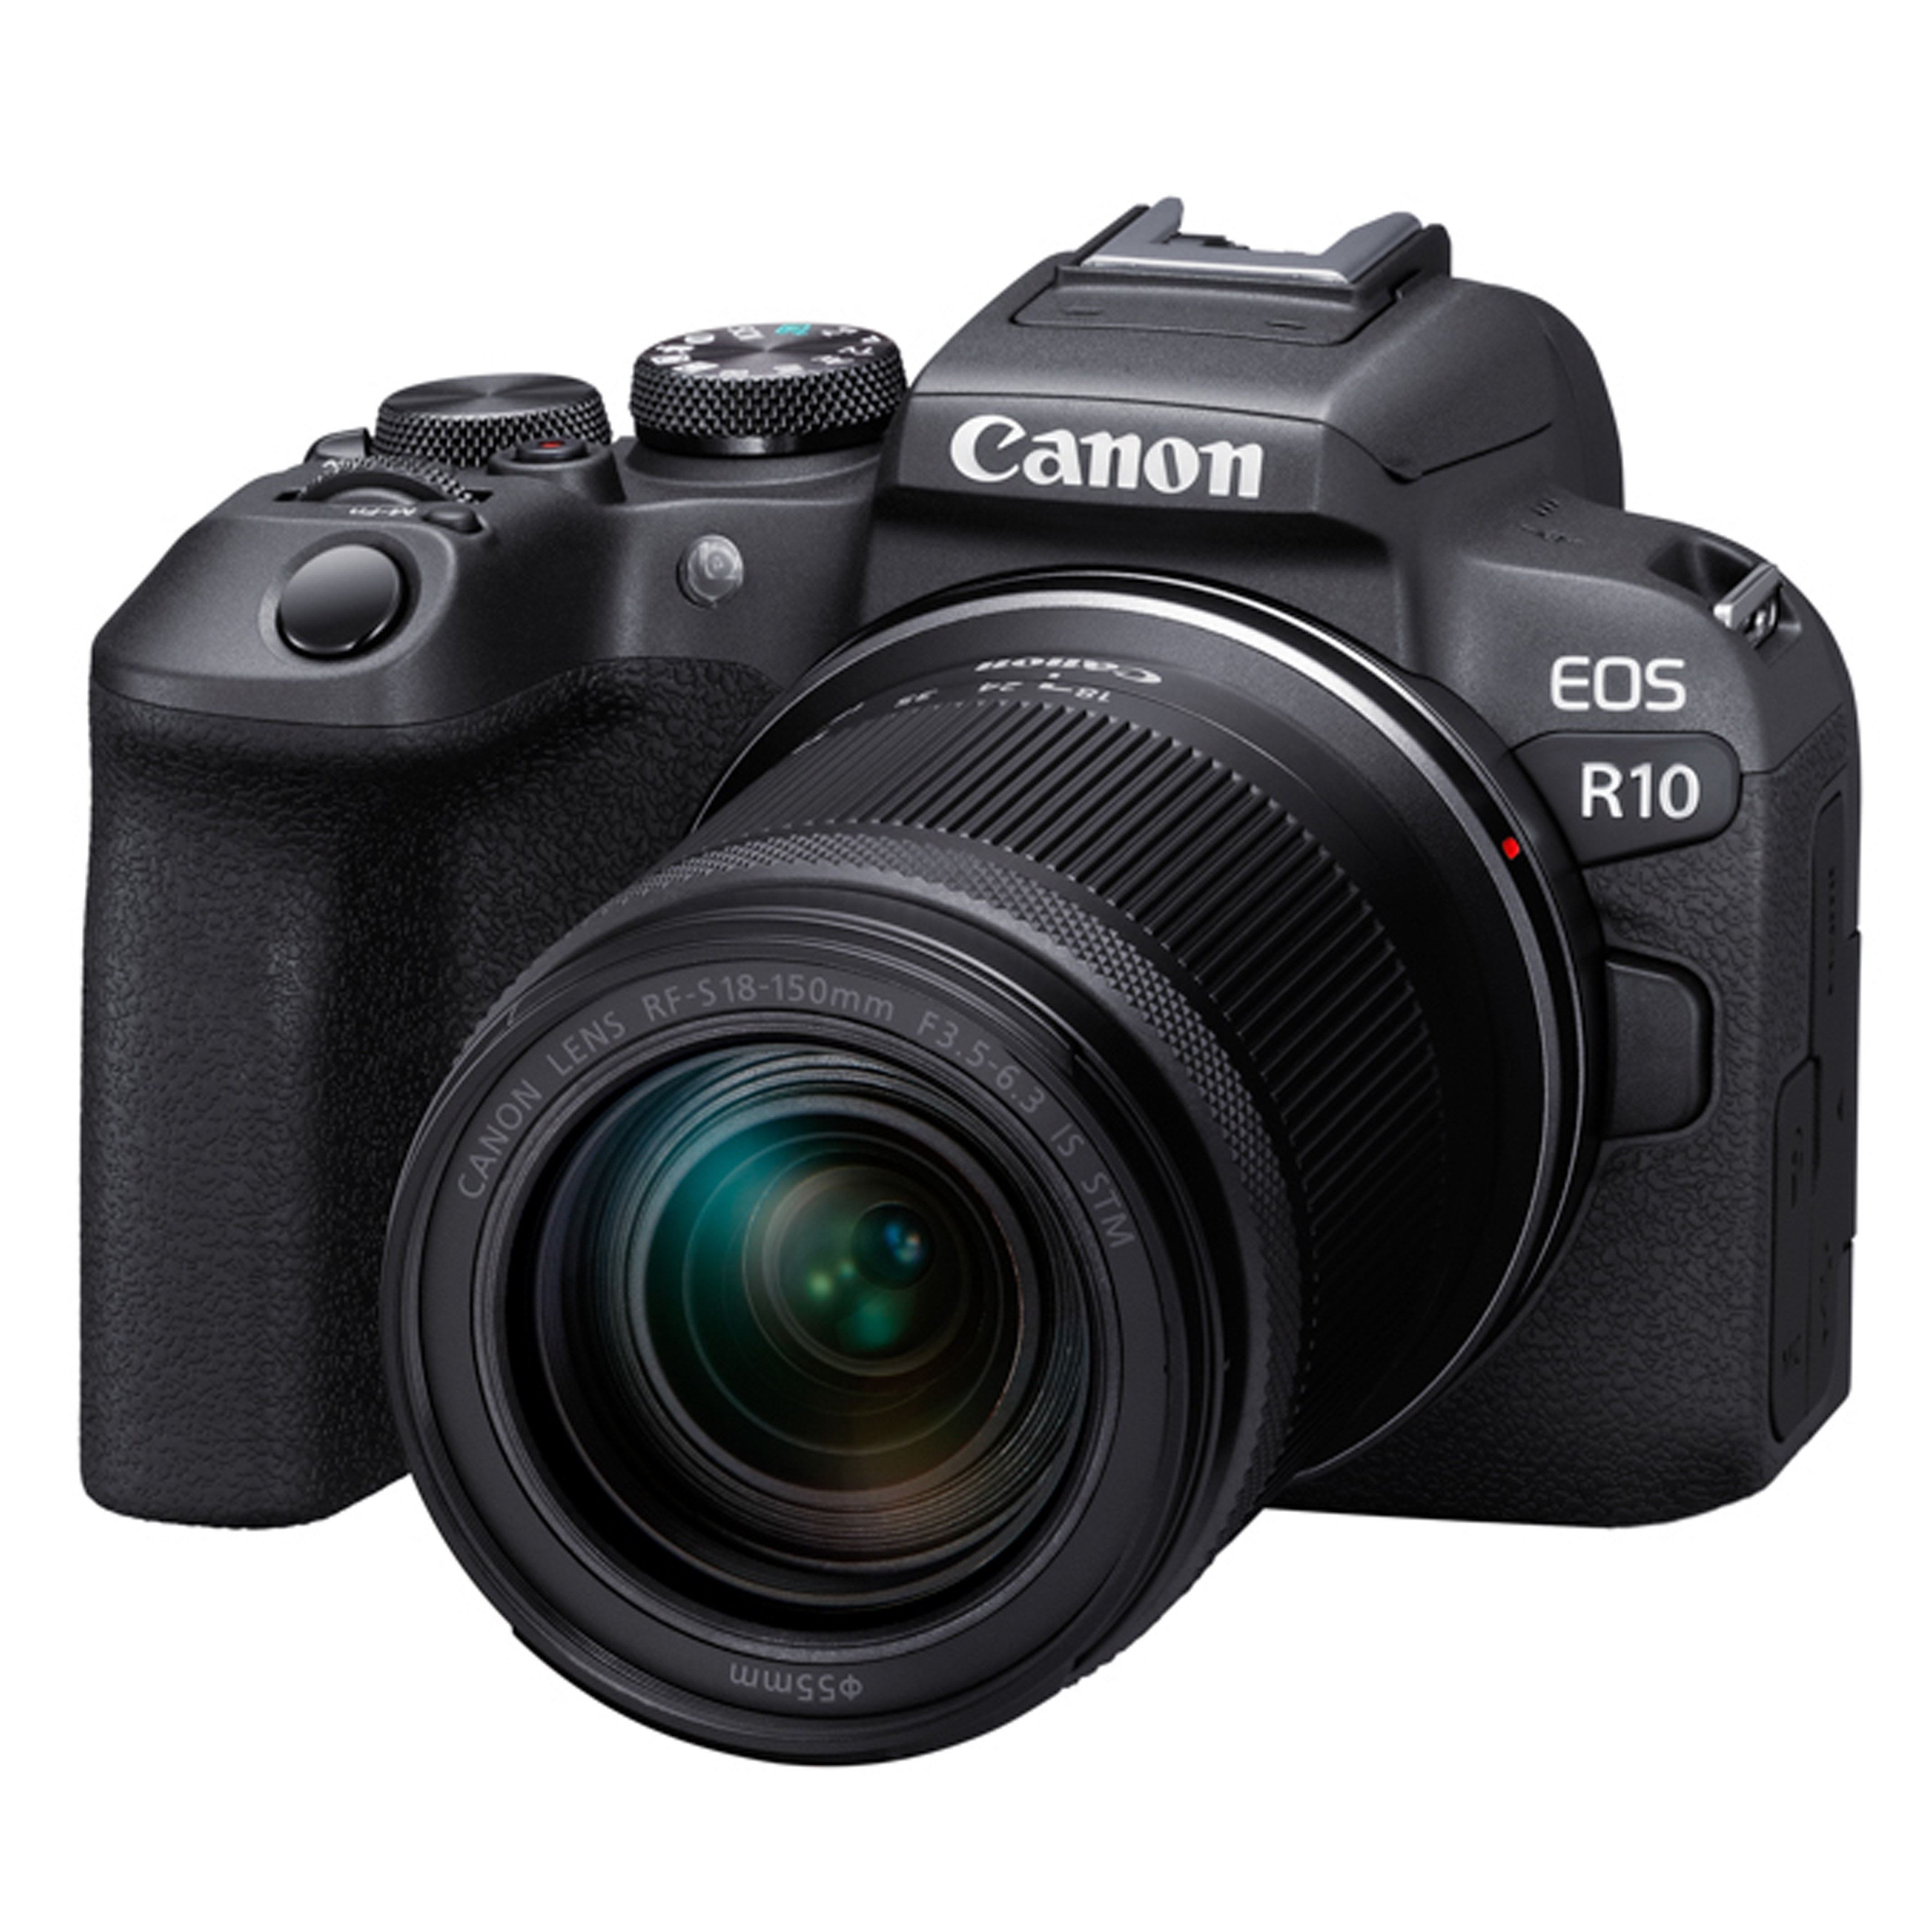 キヤノン Canon EOS R10 RF-S18-150 IS STM レンズキット